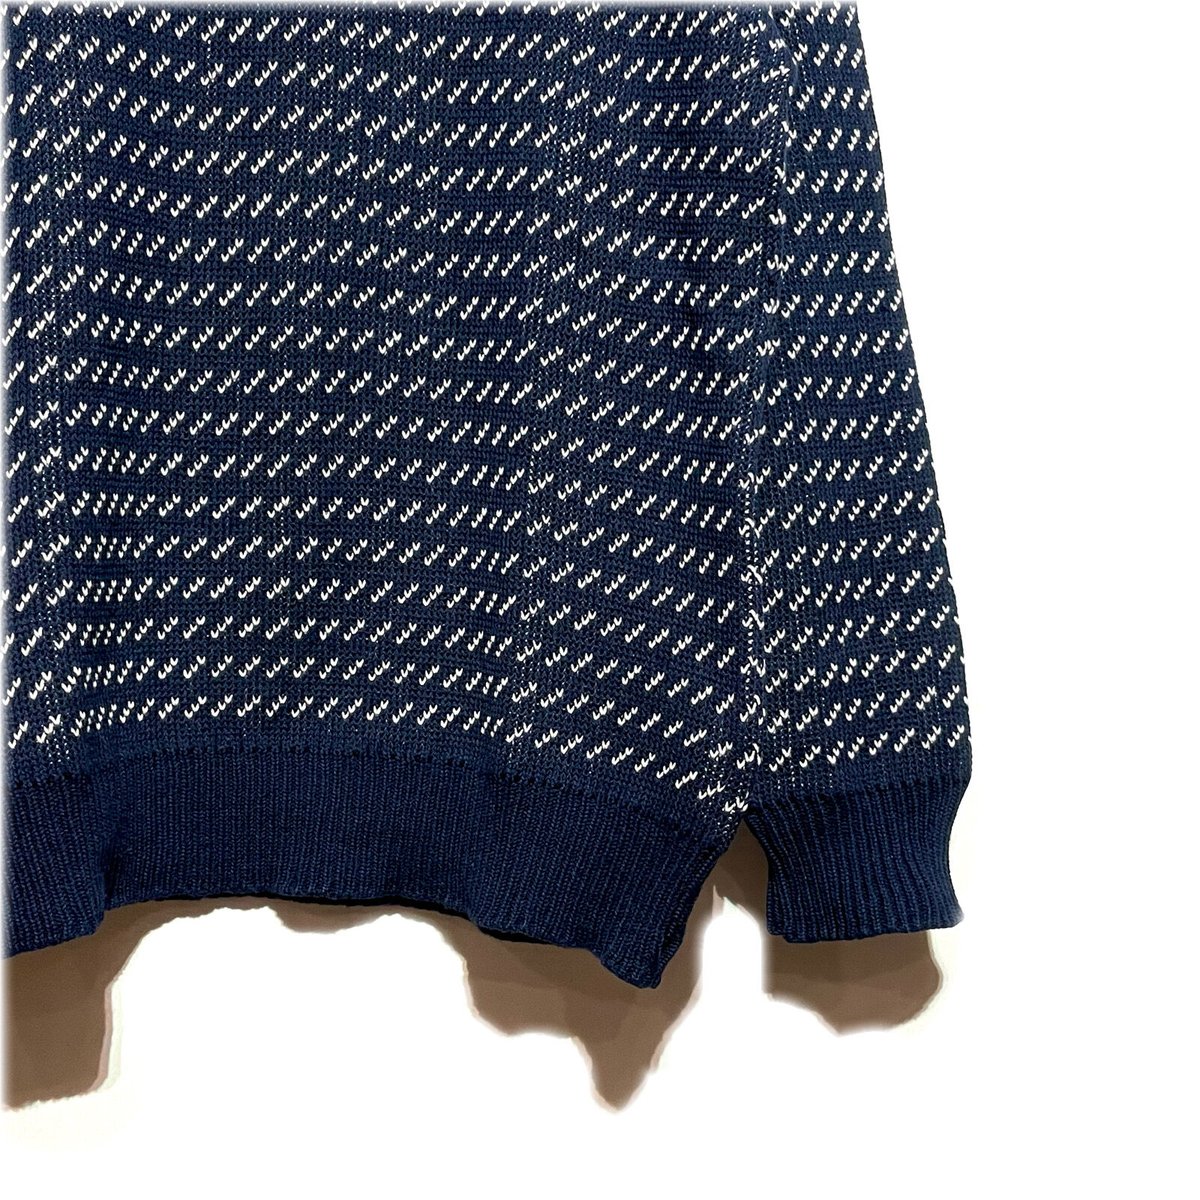 Brimwick Cotton Knit Stripe Sweater